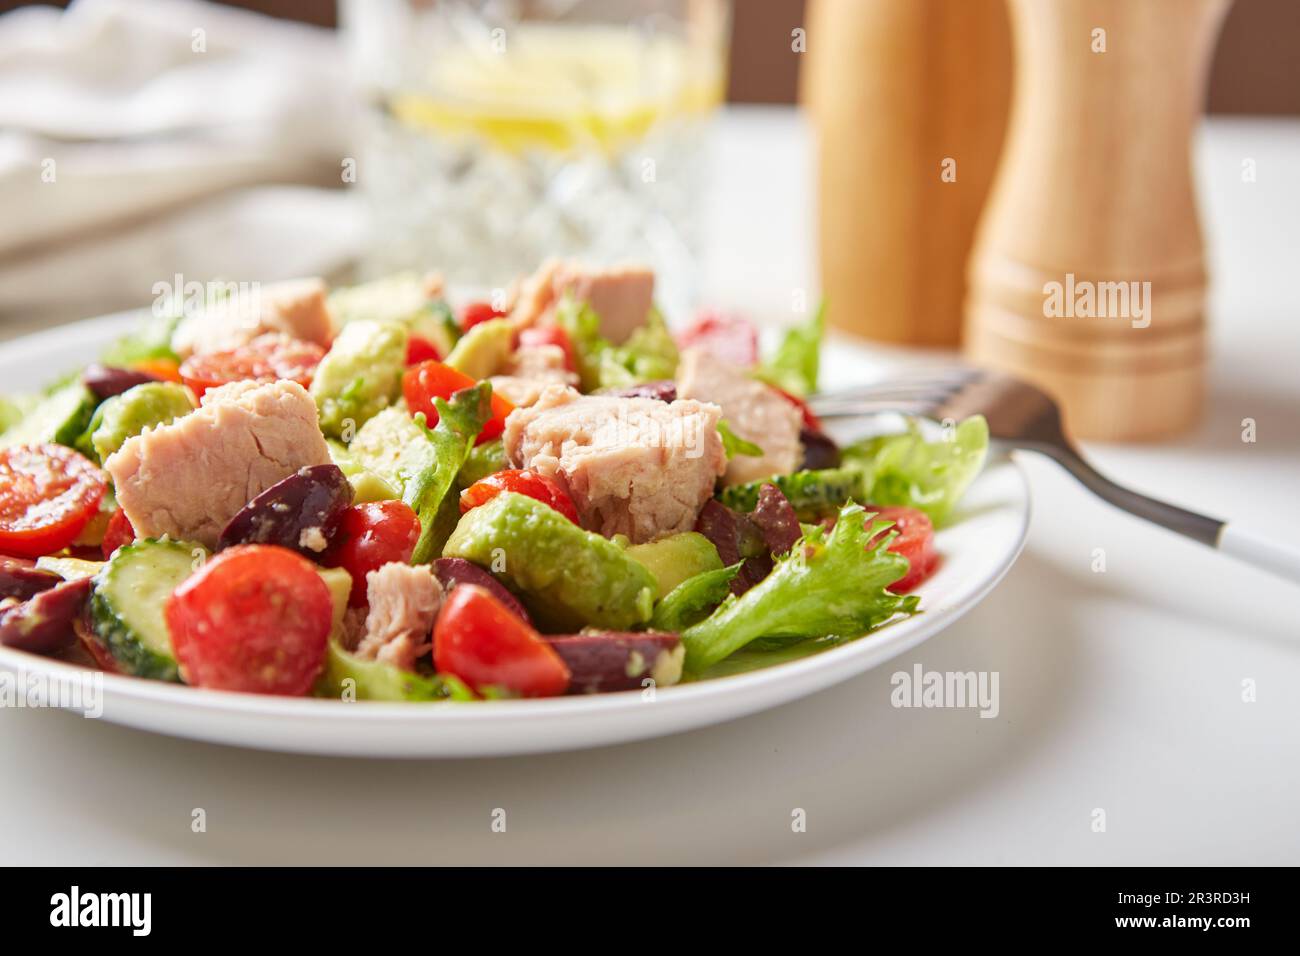 Insalata con tonno, lattuga, cetrioli, pomodori, olive e avocado in piatto bianco sul tavolo Foto Stock